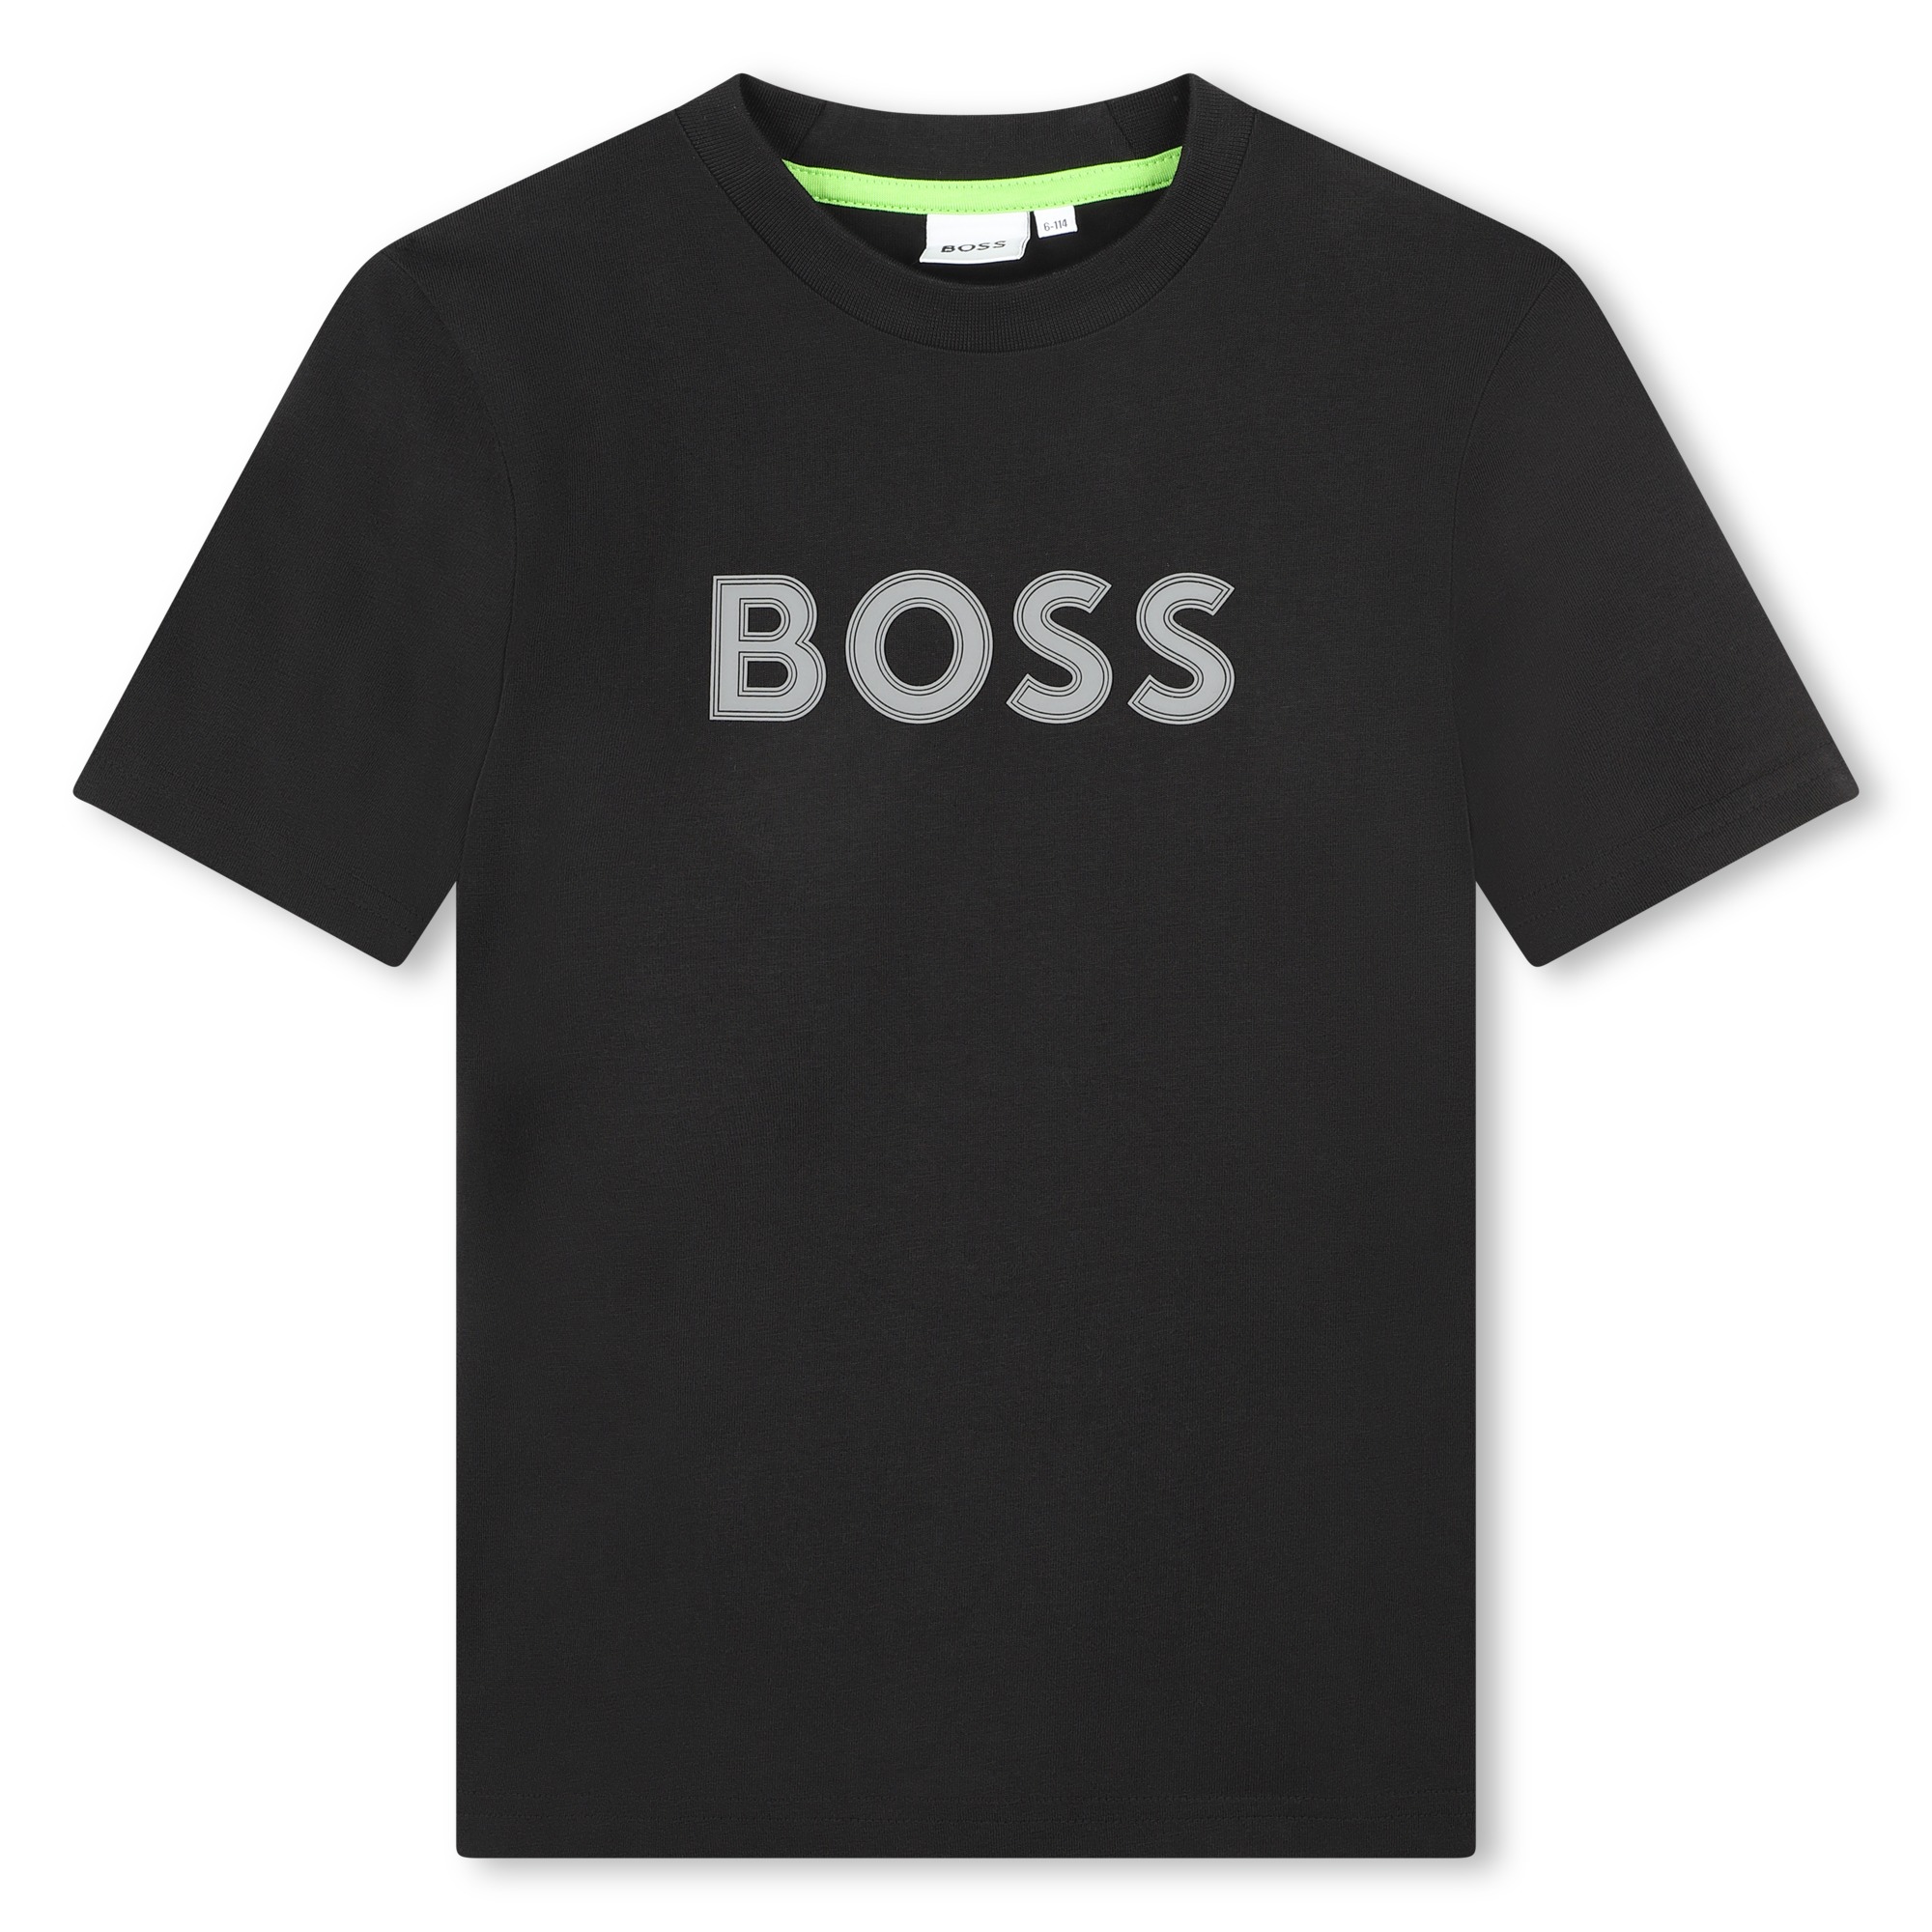 Baumwollshirt mit Logo BOSS Für JUNGE